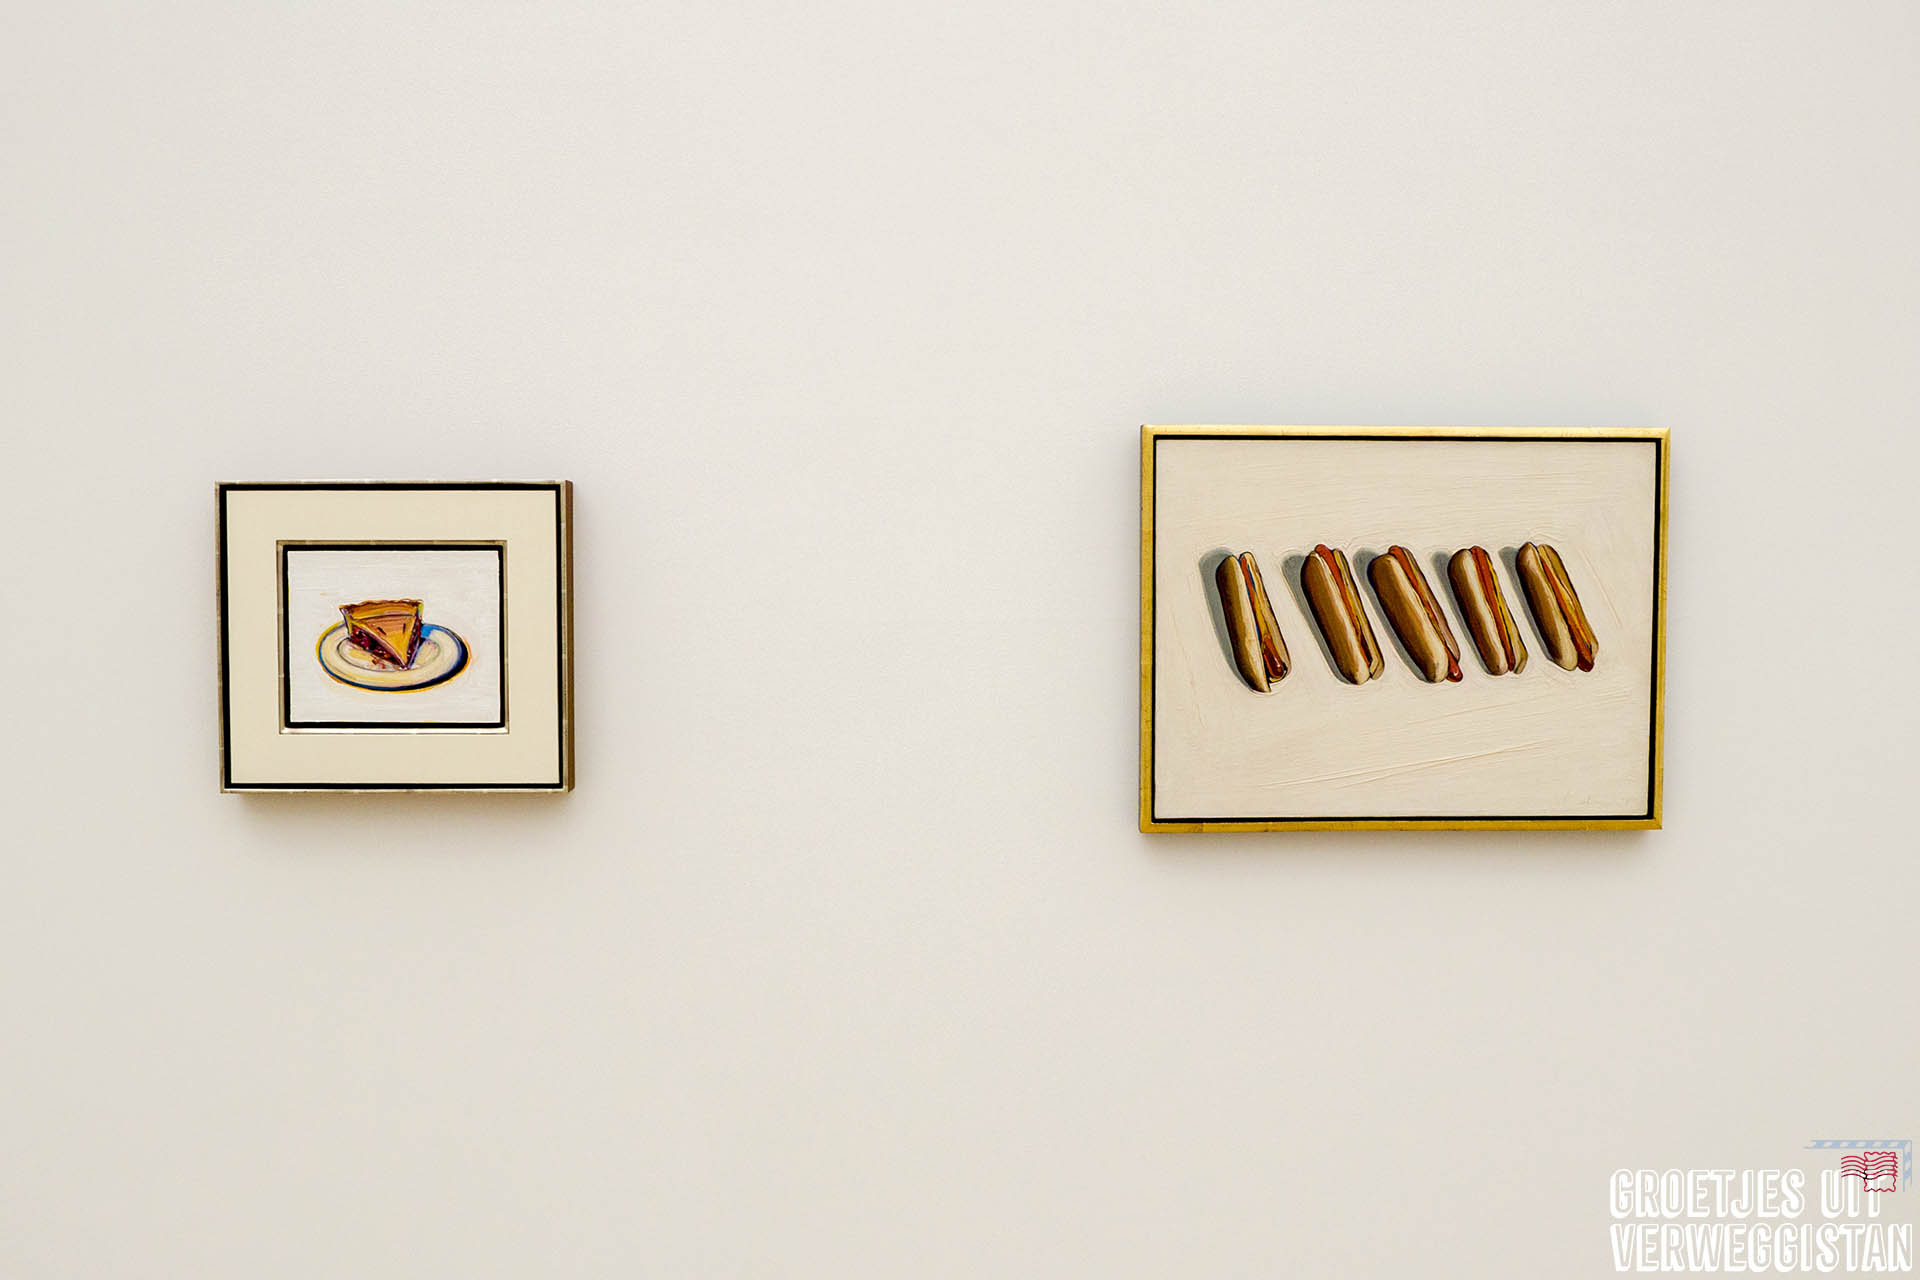 Schilderijen van Wayne Thiebaud met taart en met hotdogs in Museum Voorlinden in Wassenaar.